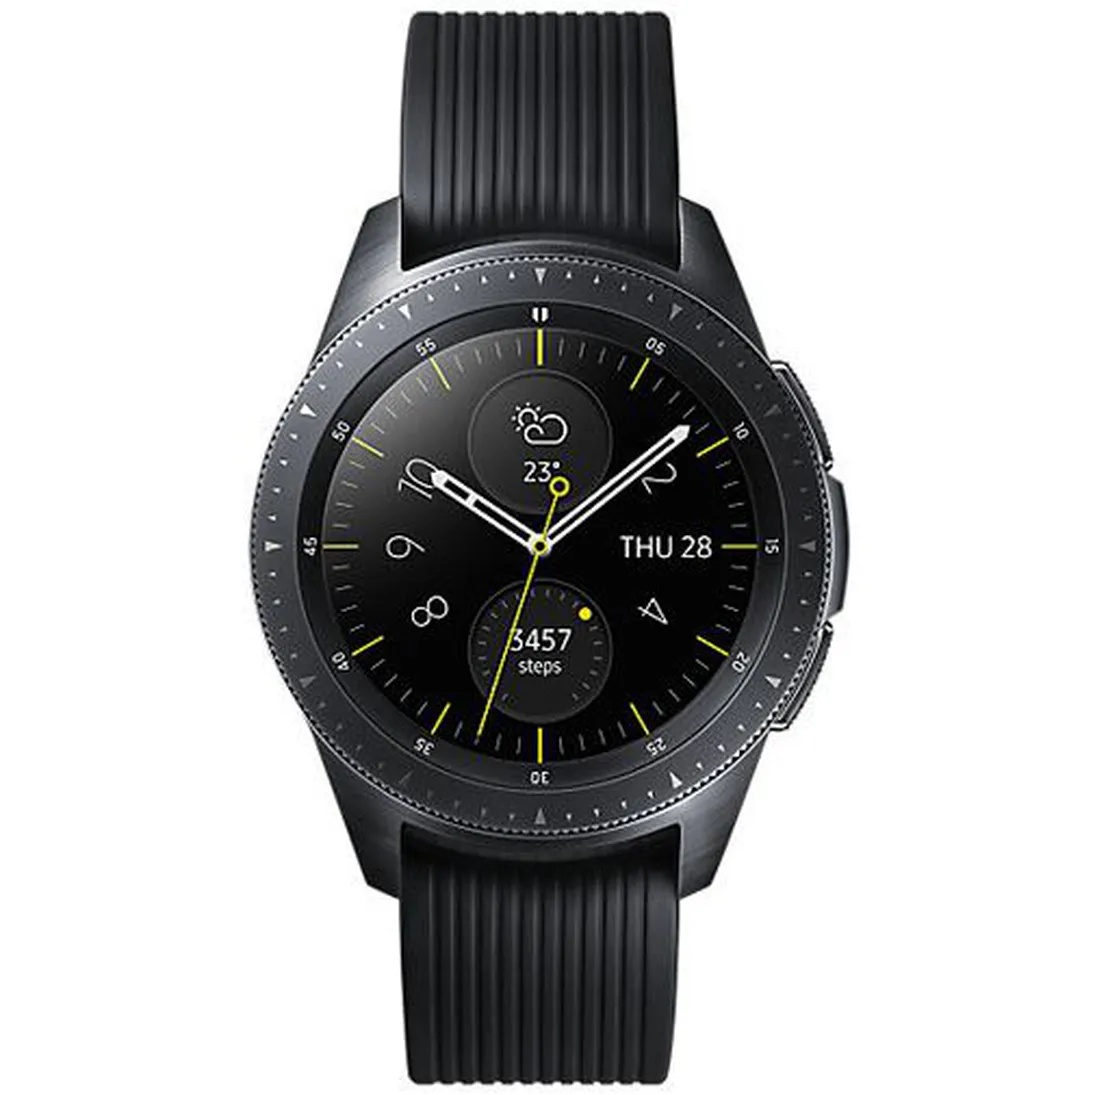 SM-R810 Galaxy Watch 42mm (WiFi Version)